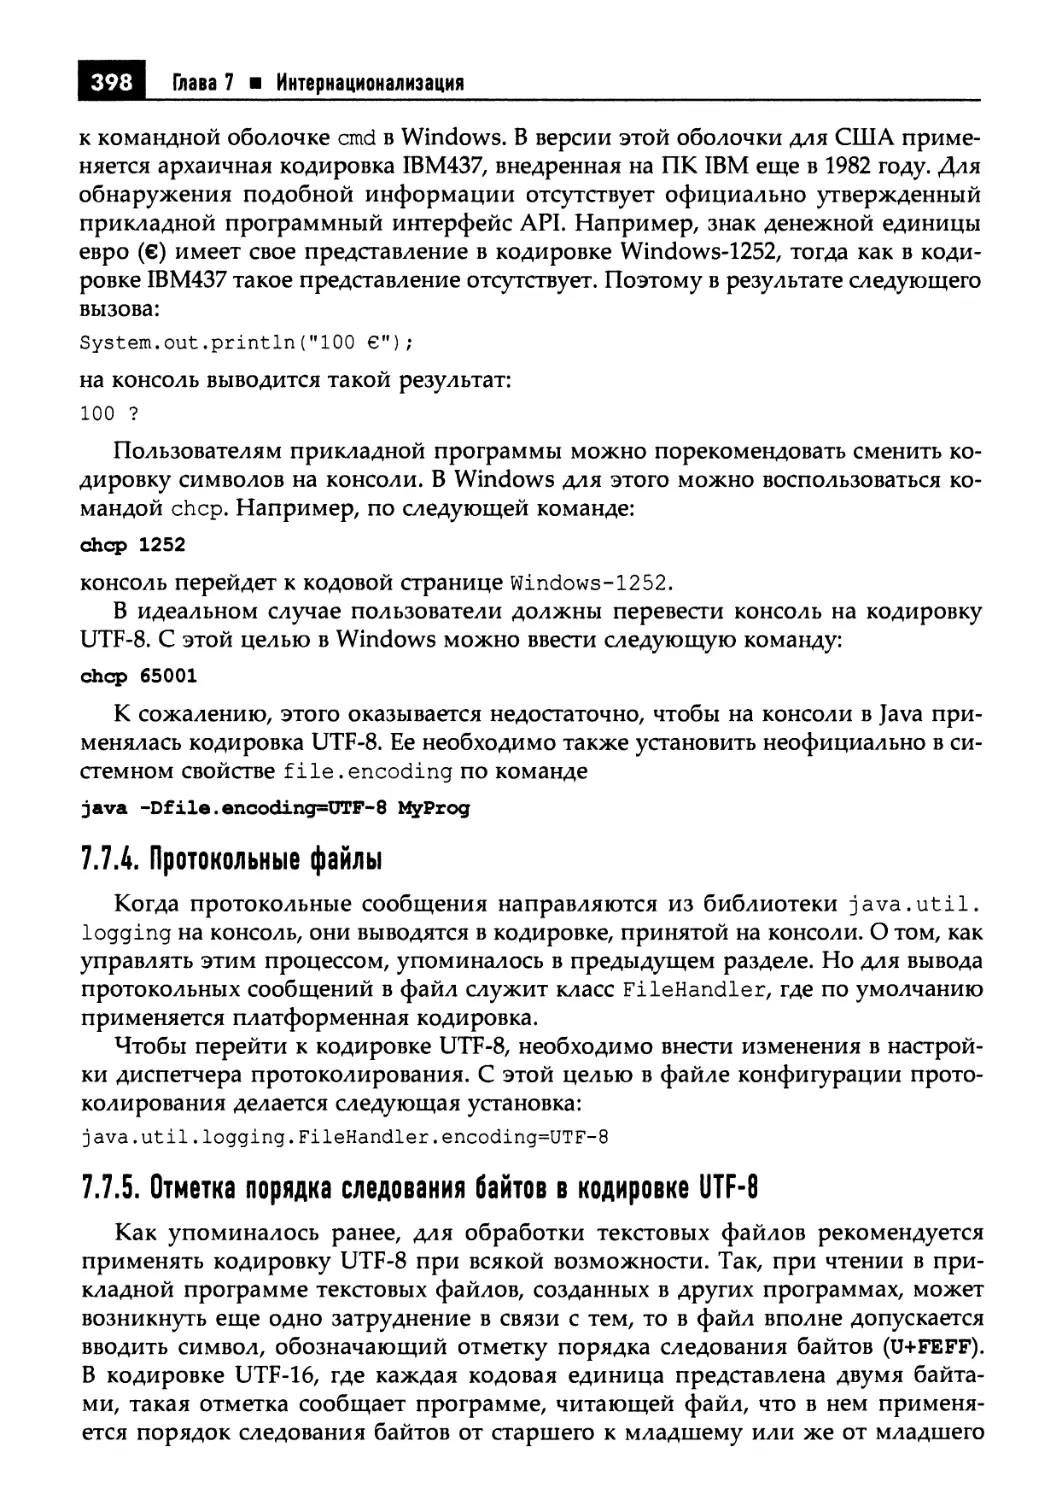 7.7.4. Протокольные файлы
7.7.5. Отметка порядка следования байтов в кодировке UTF-8